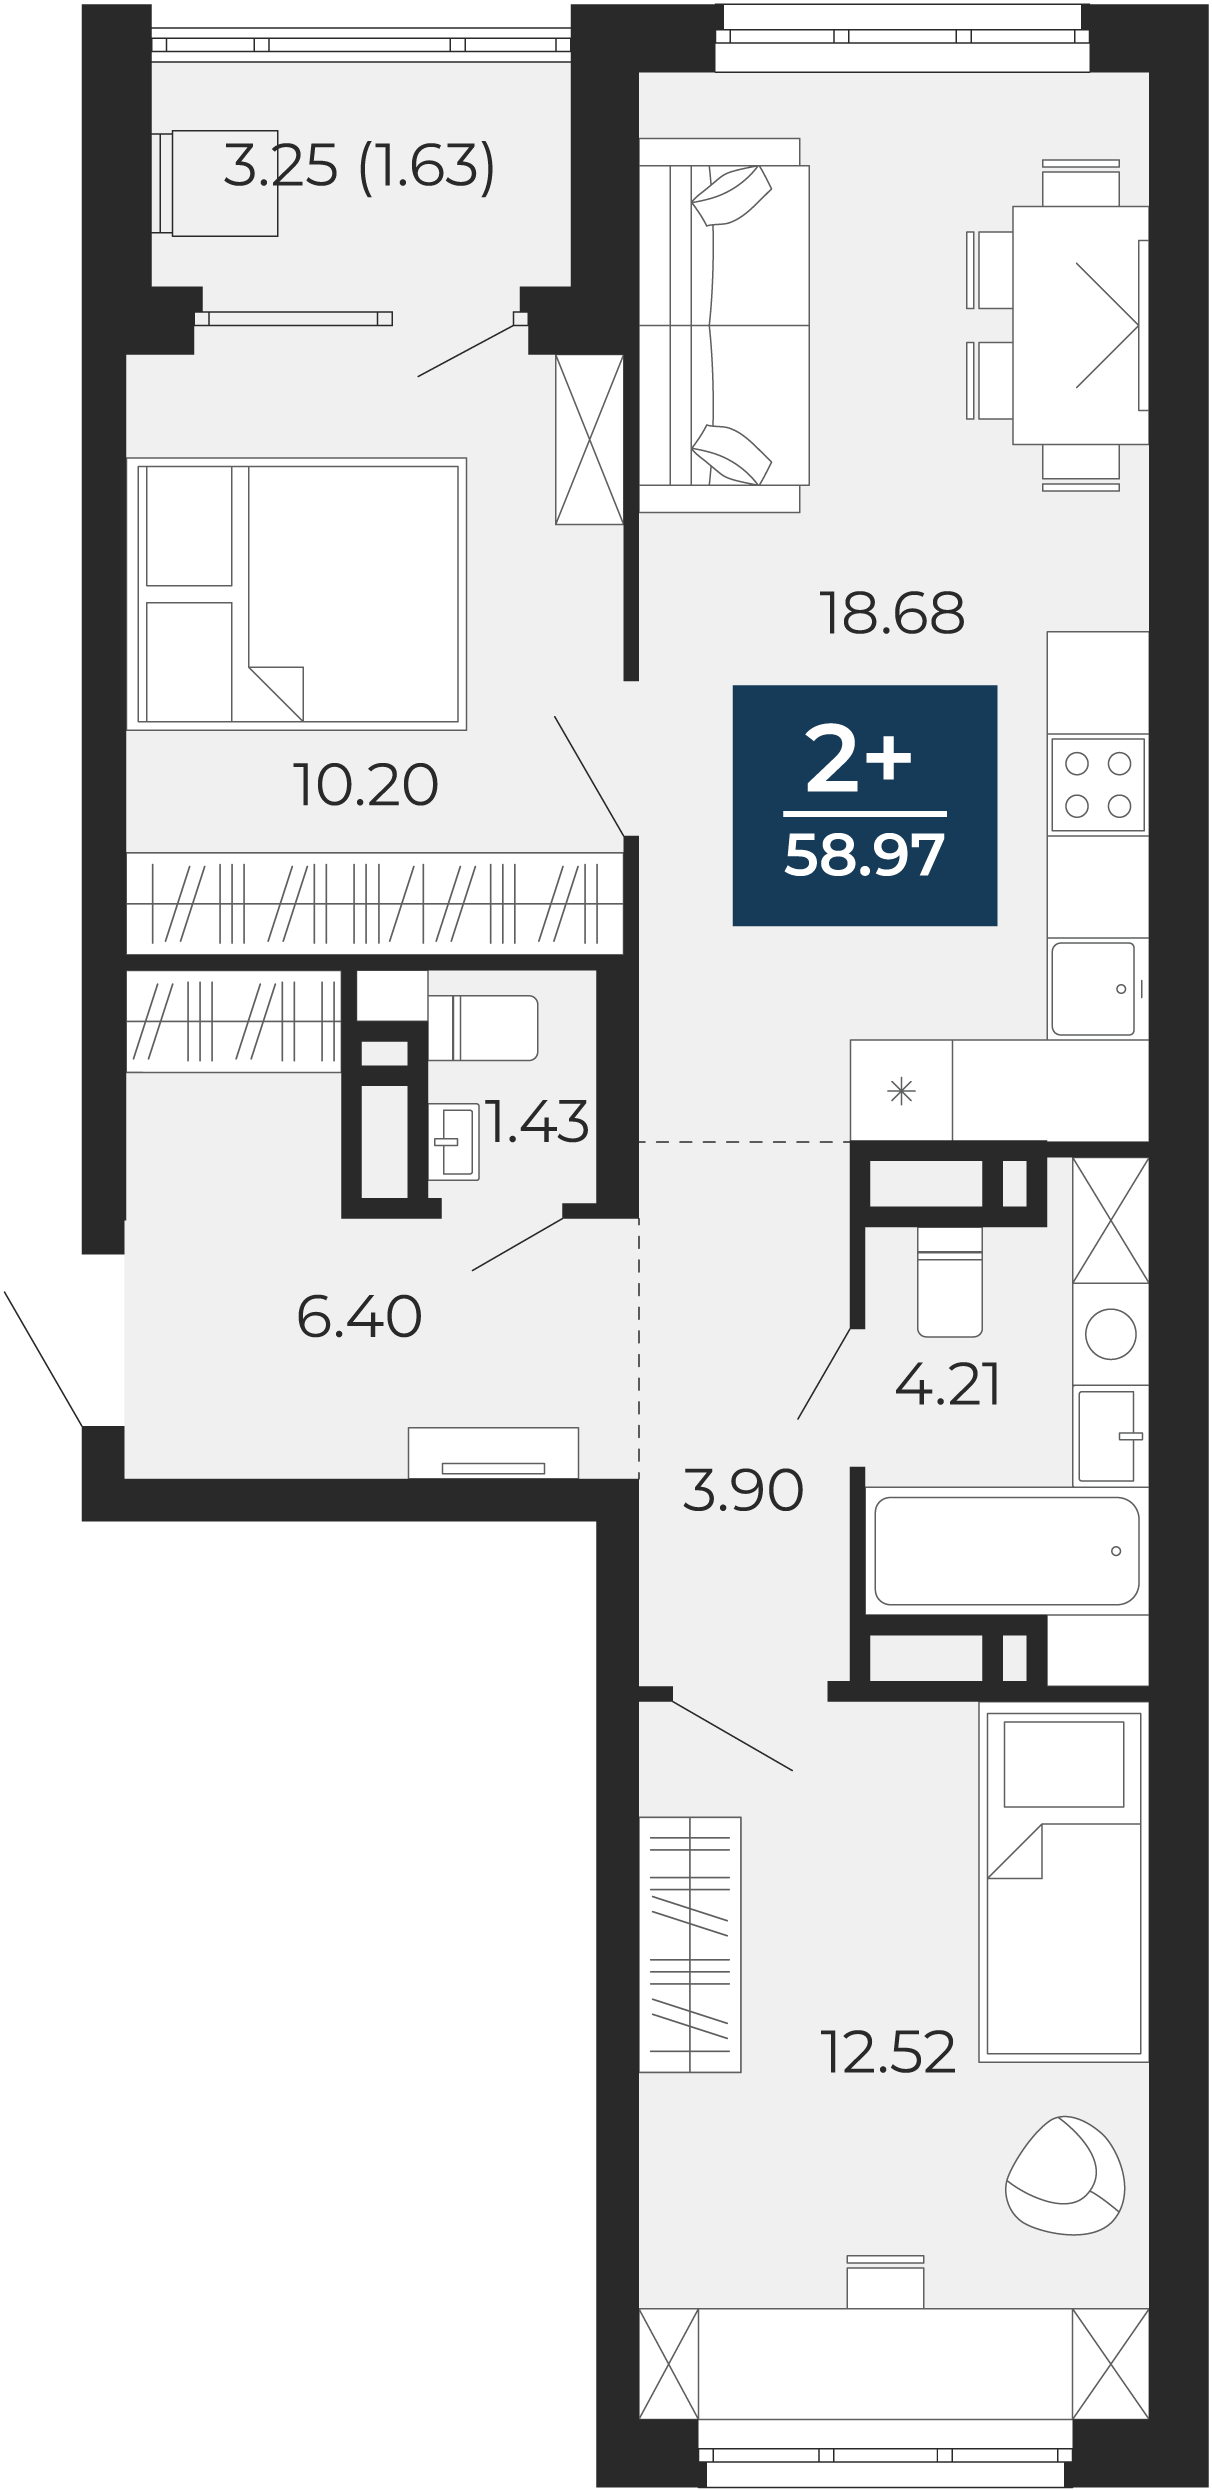 Квартира № 97, 2-комнатная, 58.97 кв. м, 9 этаж